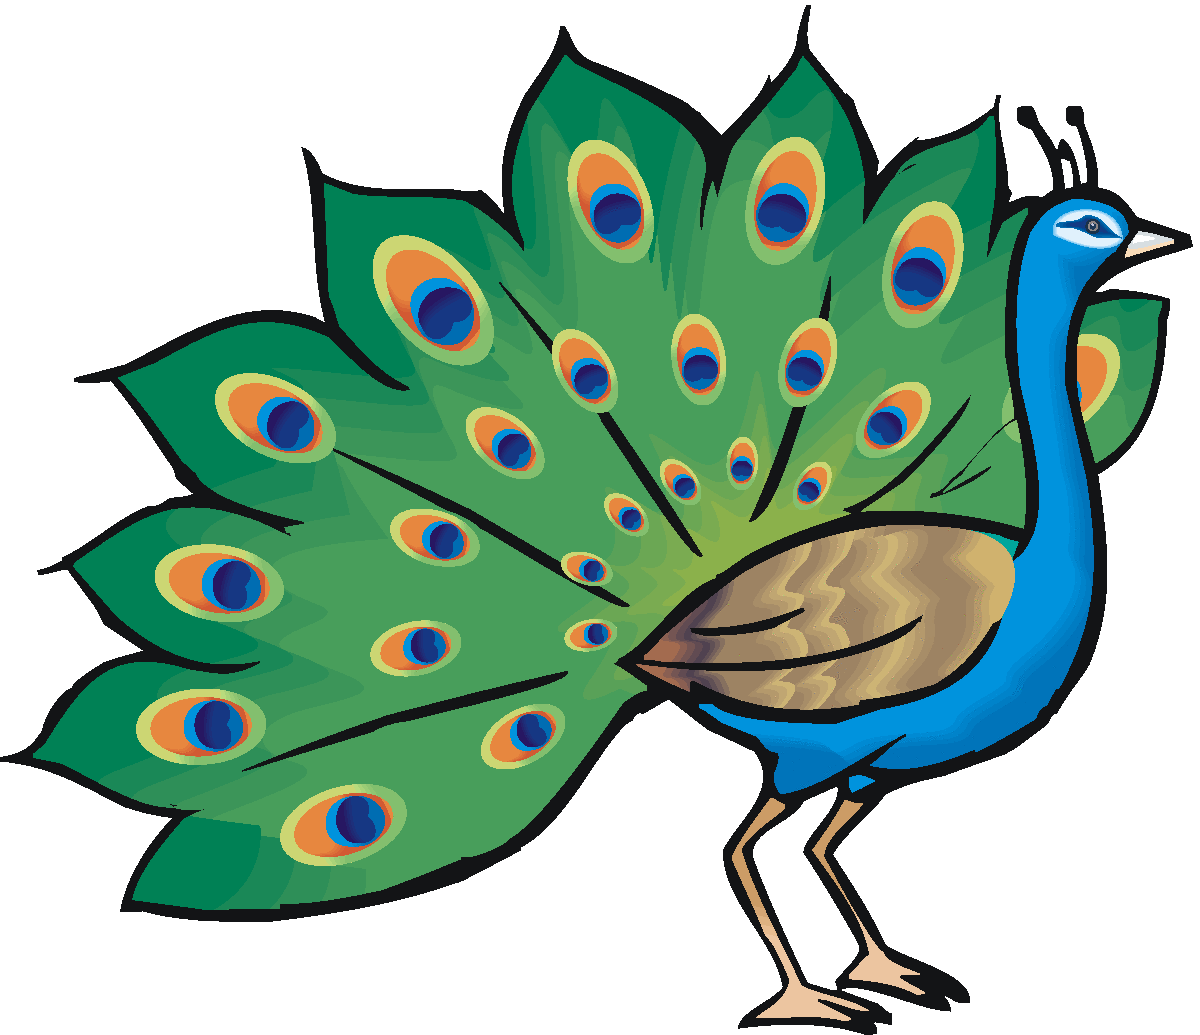 Cartoon peacock Stock Photos